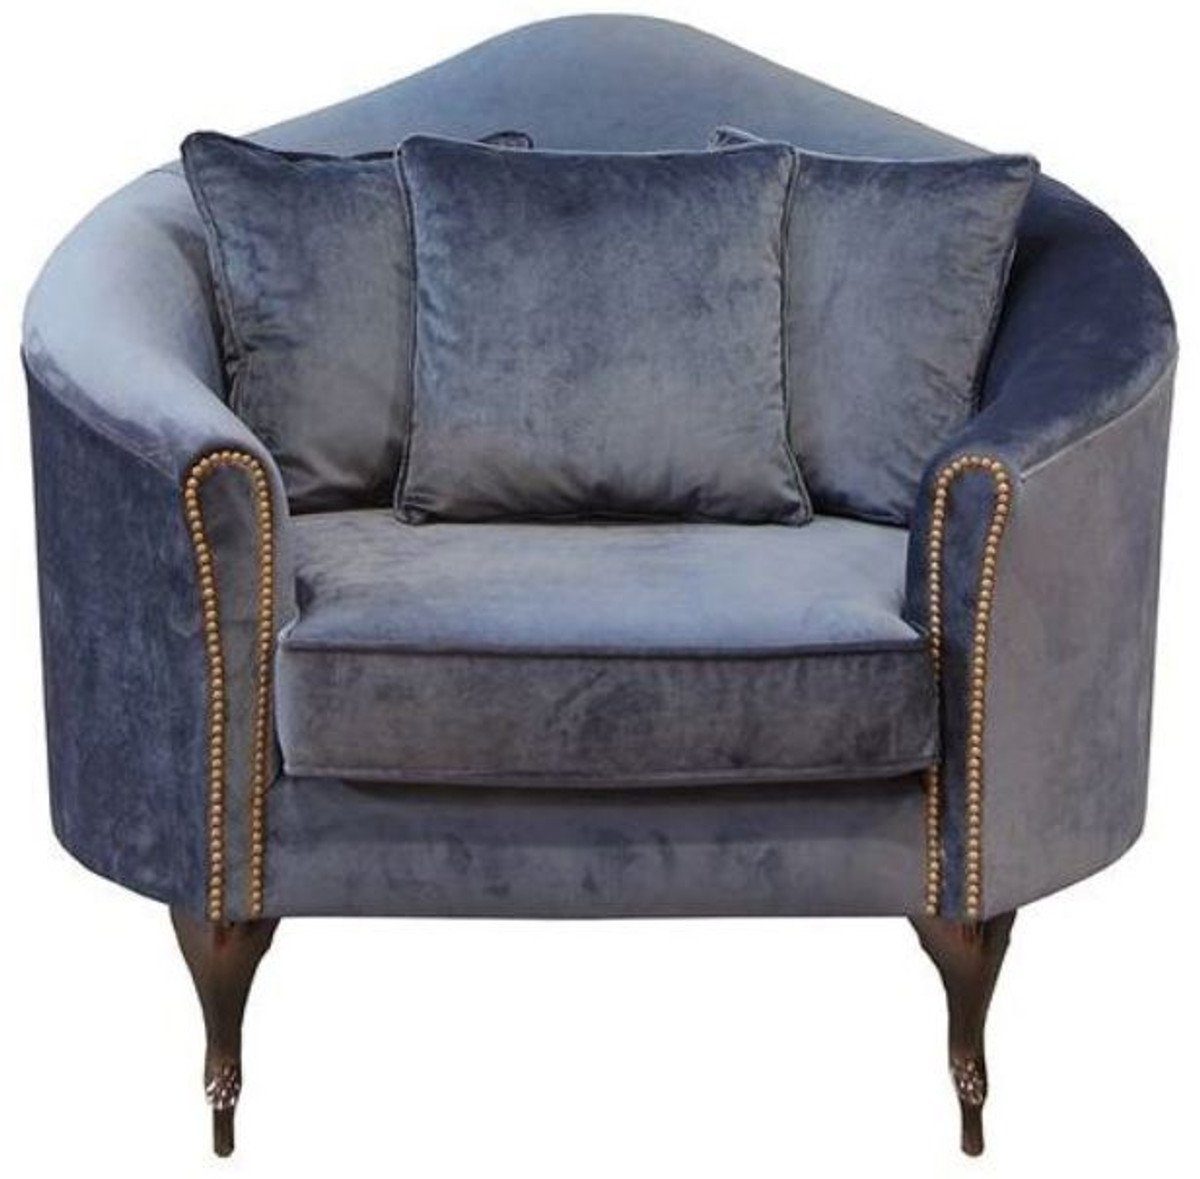 Casa Padrino Sessel Luxus Barock Samt Sessel Blau / Dunkelbraun 120 x 90 x  H. 100 cm - Edler Wohnzimmer Sessel mit dekorativen Kissen - Barock  Wohnzimmer Möbel - Luxus Qualität